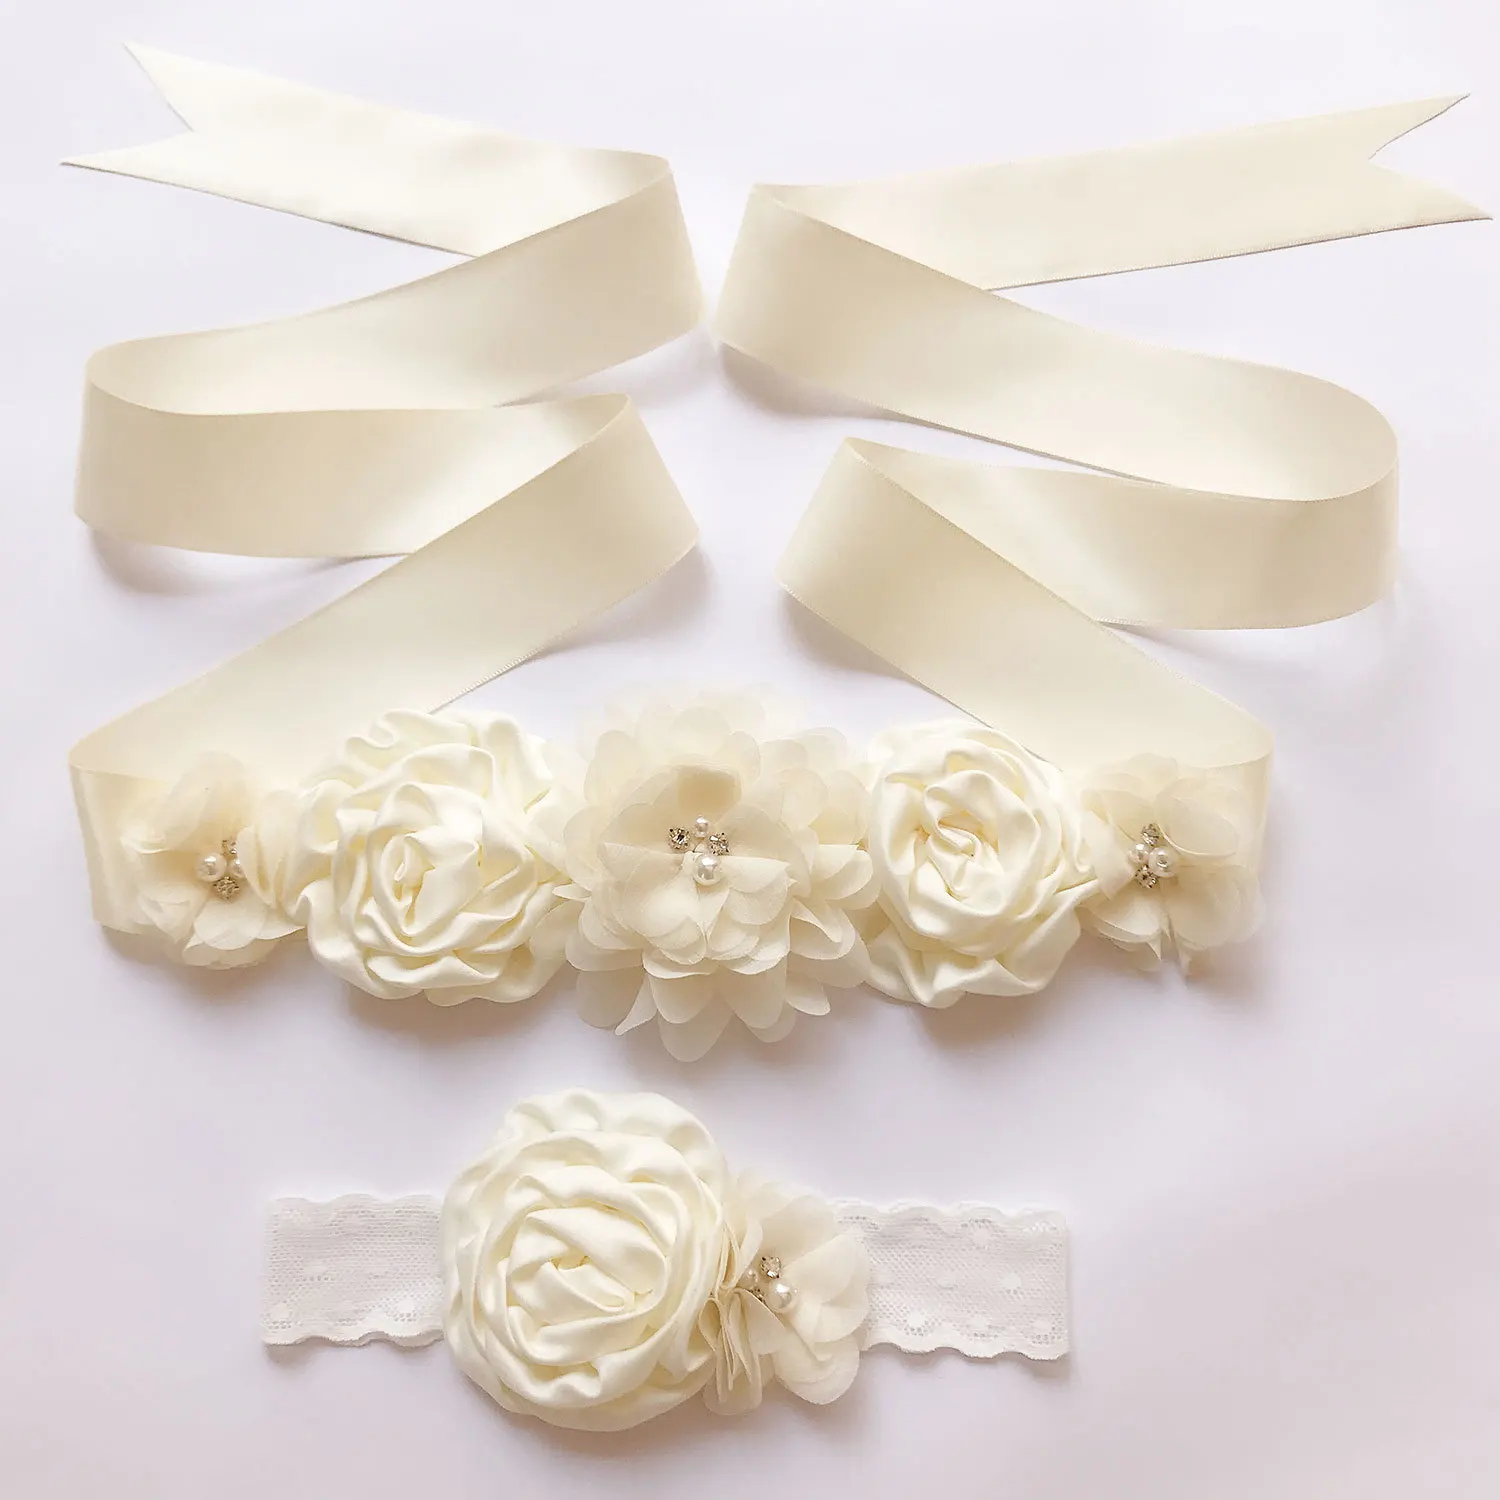 Г., 1 комплект для свадьбы, пояс с цветком, повязка на голову для подружки невесты, красивое детское свадебное платье пояс, атласная шелковая повязка и пояс с цветочками - Цвет: Слоновая кость